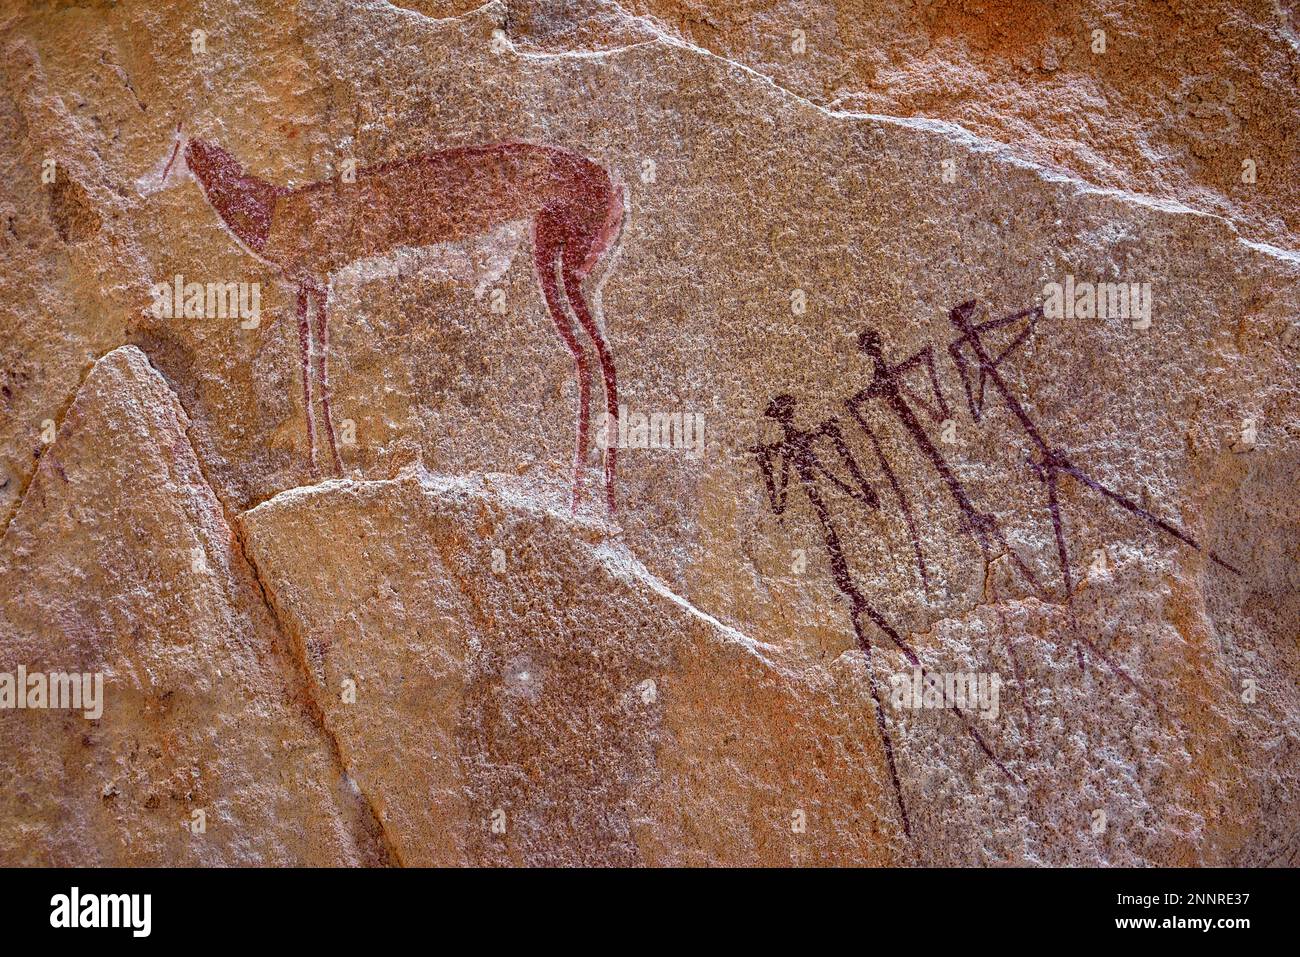 Peintures rupestres dans la grotte molaire, près de Twyfelfontein, région de Kunene, Namibie Banque D'Images